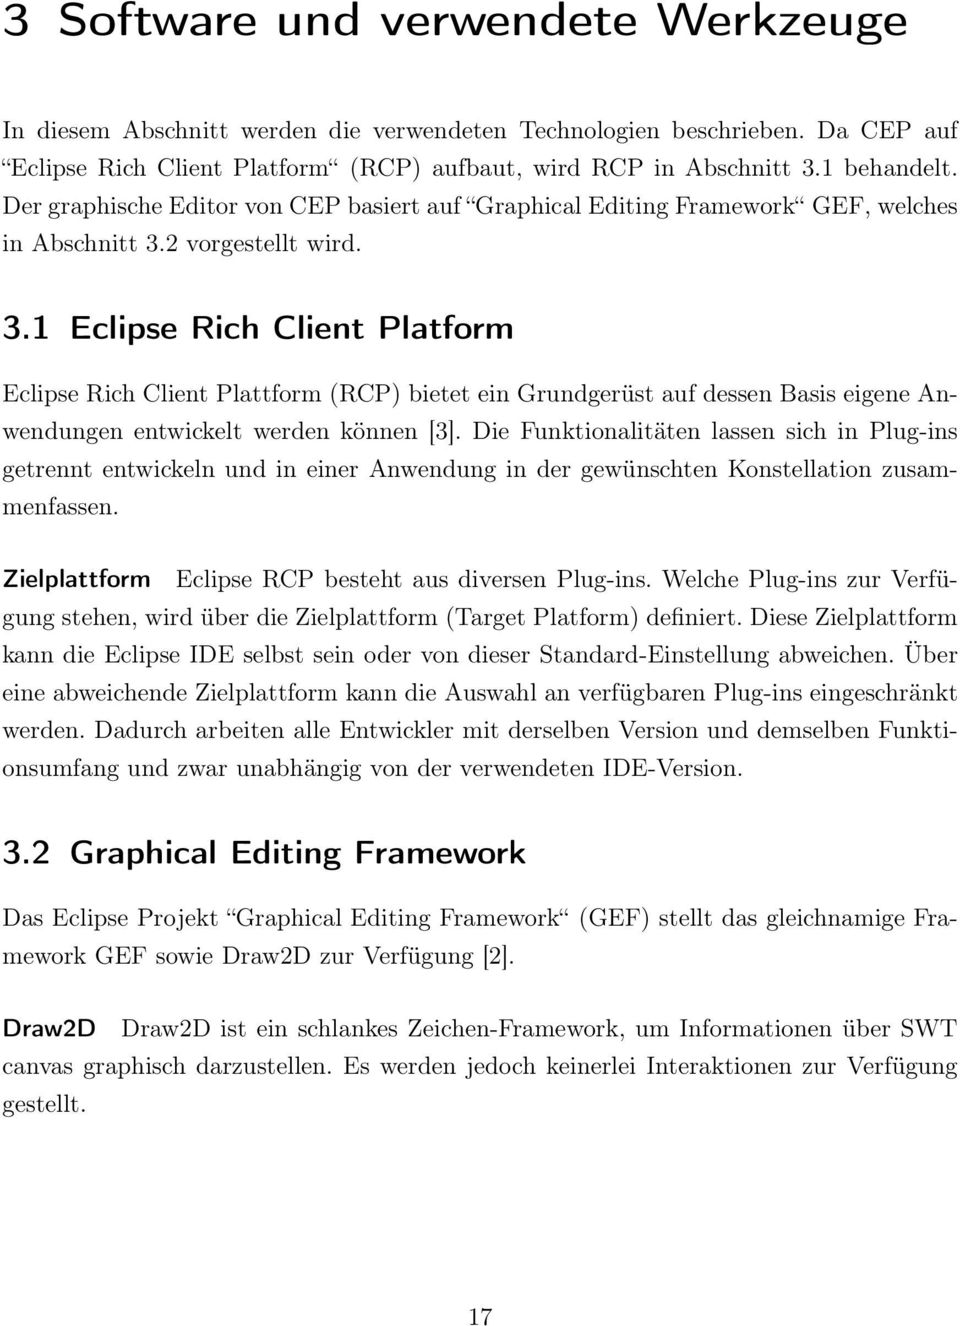 2 vorgestellt wird. 3.1 Eclipse Rich Client Platform Eclipse Rich Client Plattform (RCP) bietet ein Grundgerüst auf dessen Basis eigene Anwendungen entwickelt werden können [3].